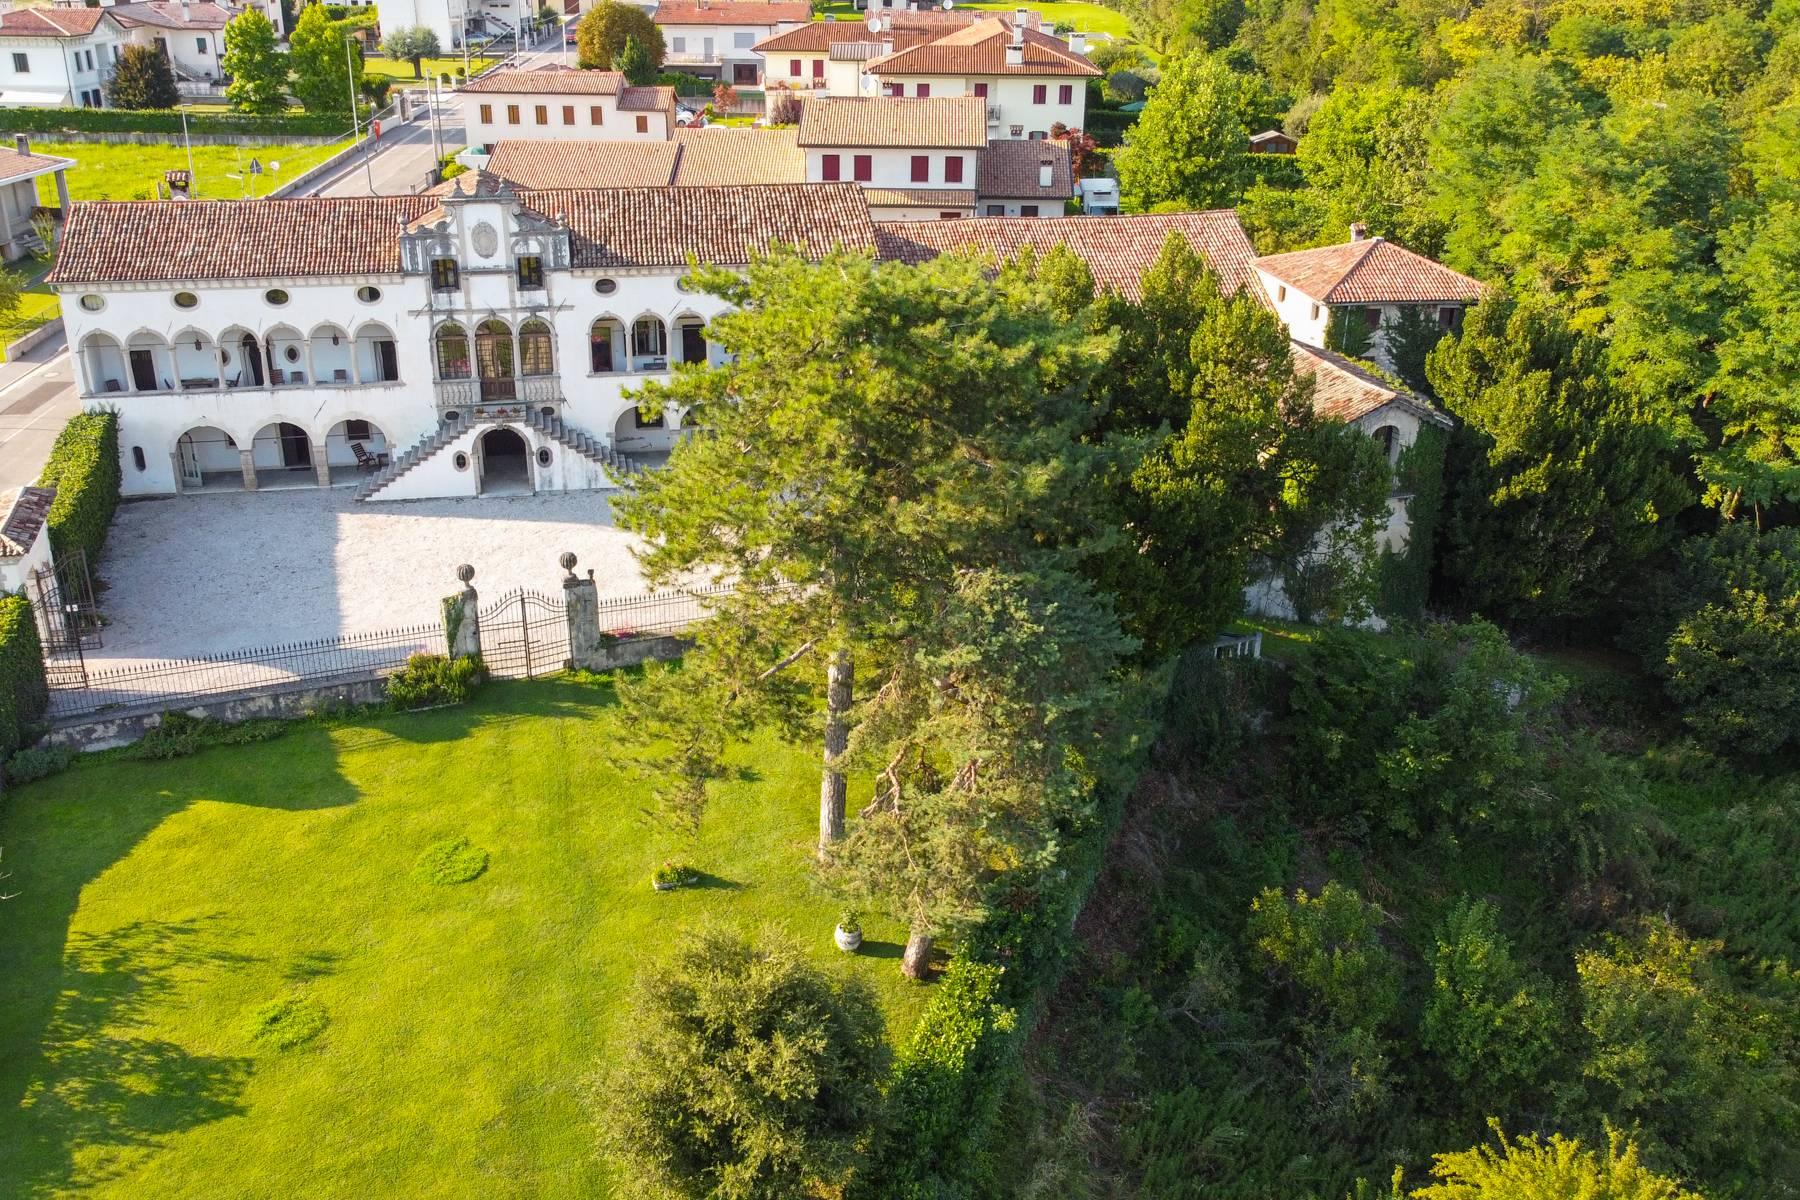 Elégante villa vénitienne du XVII siècle avec parc sul les collines de Trévise - 36